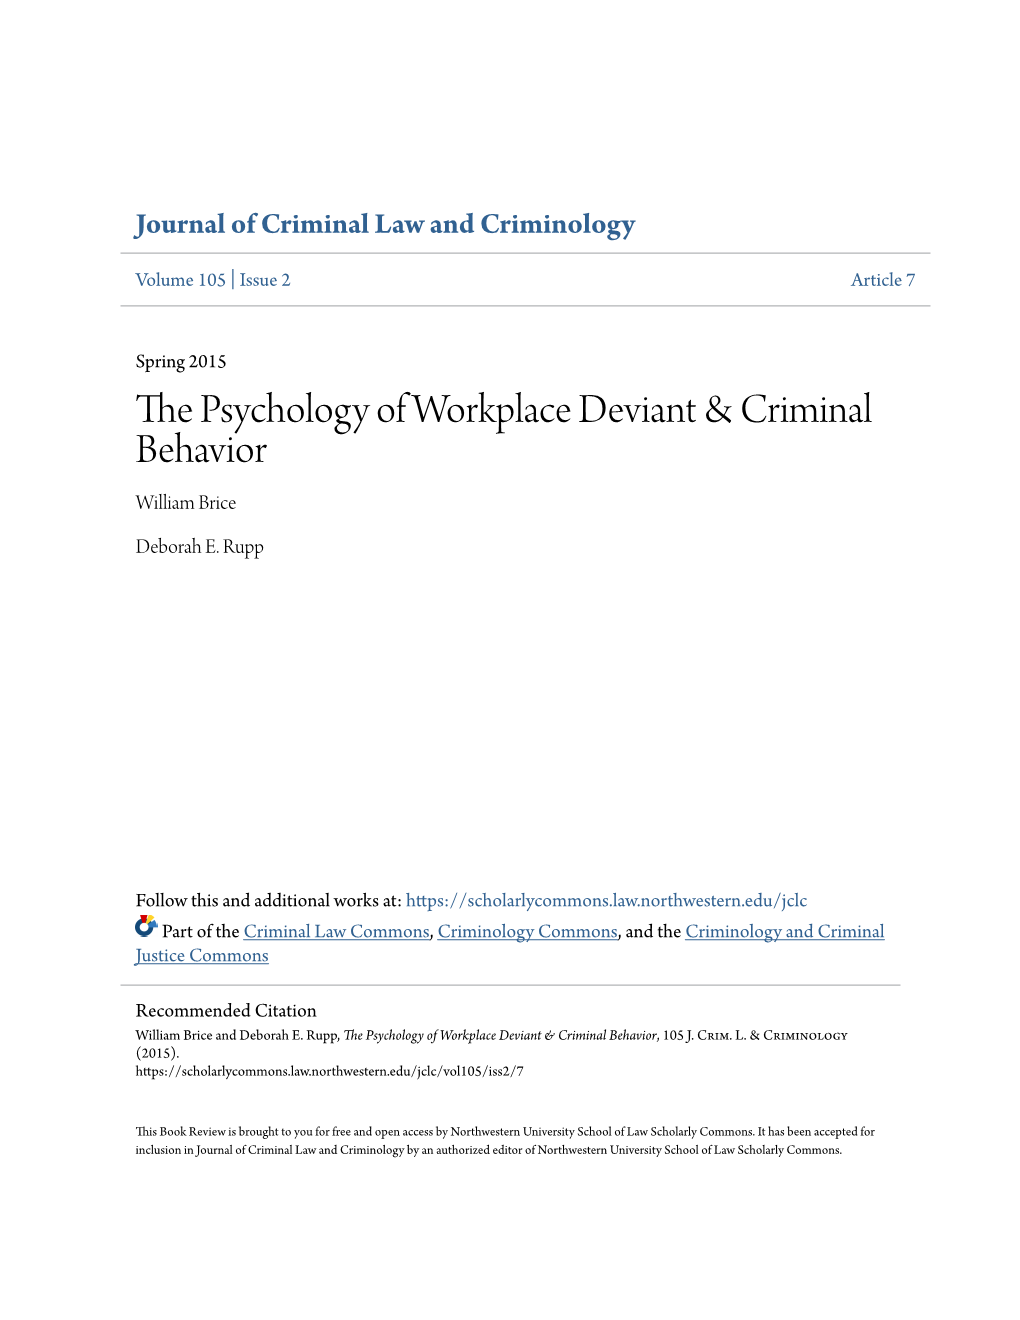 The Psychology of Workplace Deviant & Criminal Behavior